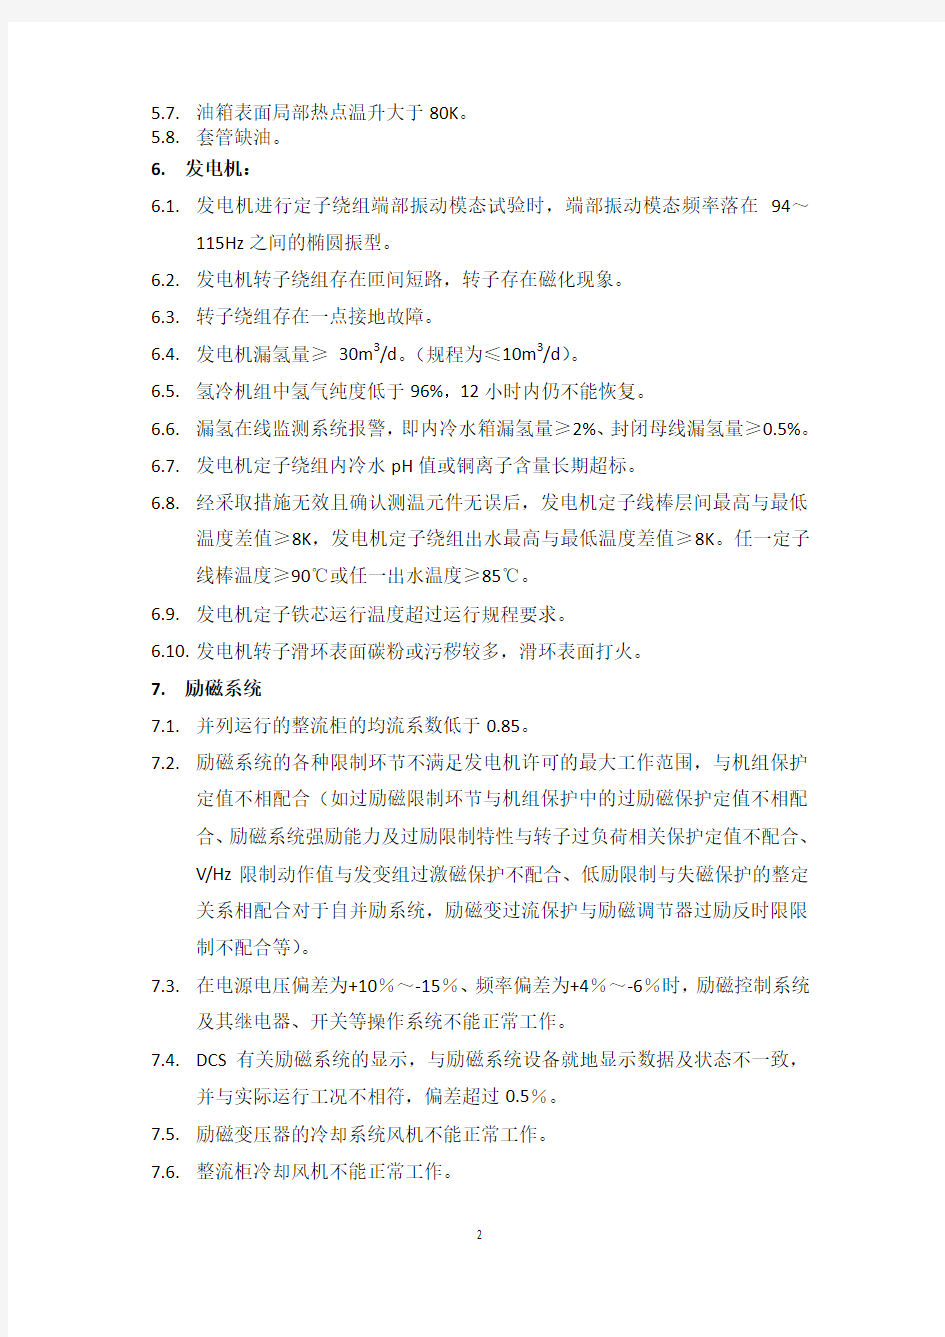 中国大唐集团公司火电机组主设备健康状况预警指标